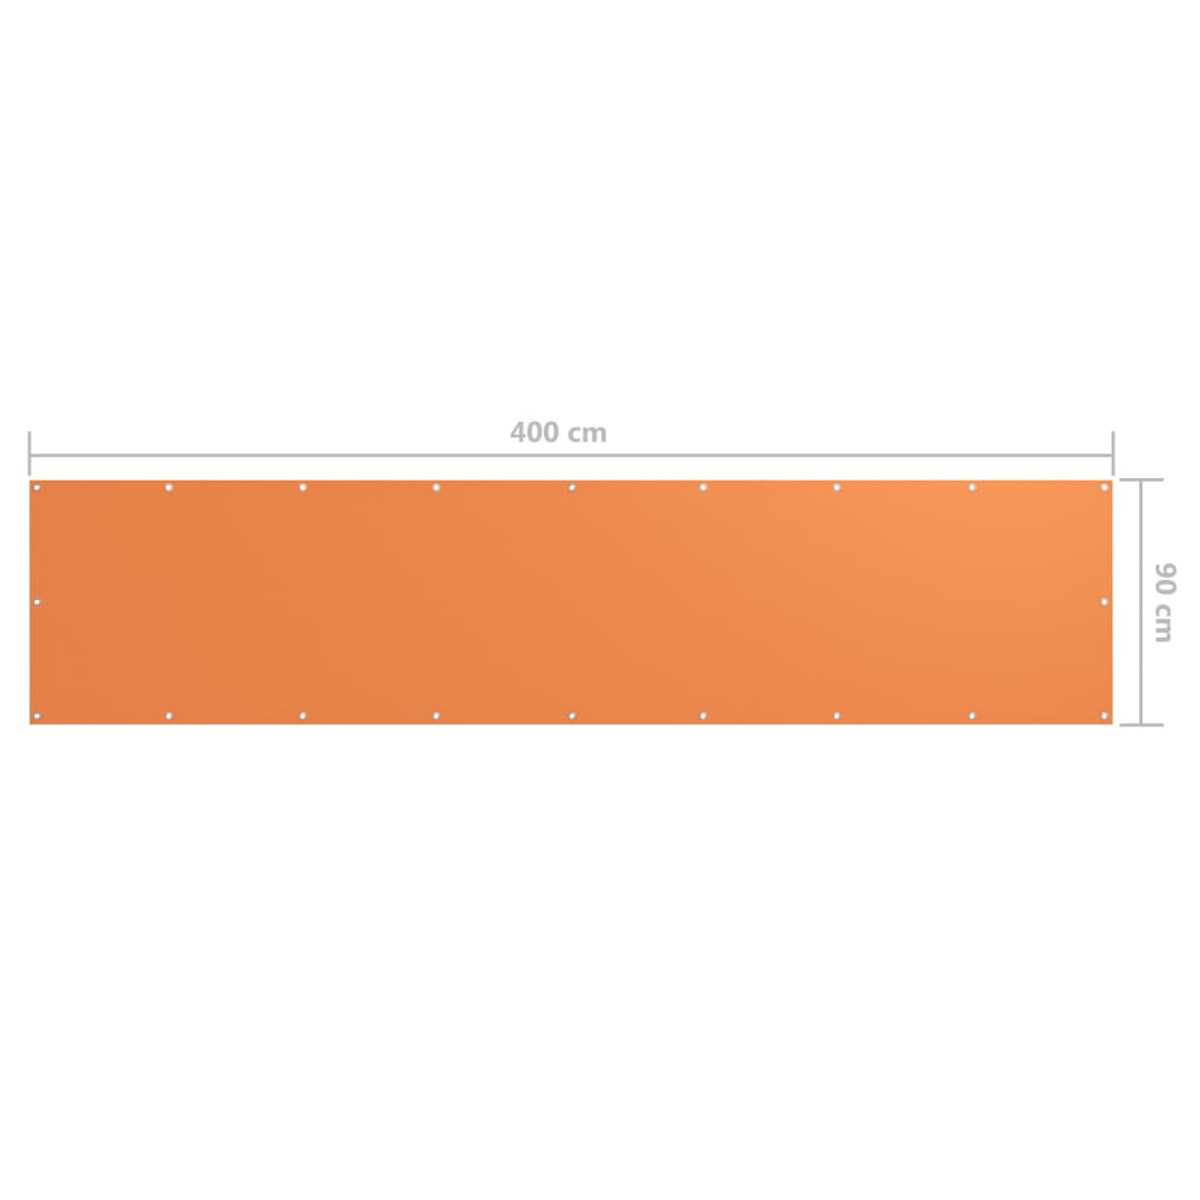 VIDAXL Orange Sichtschutz, 135049